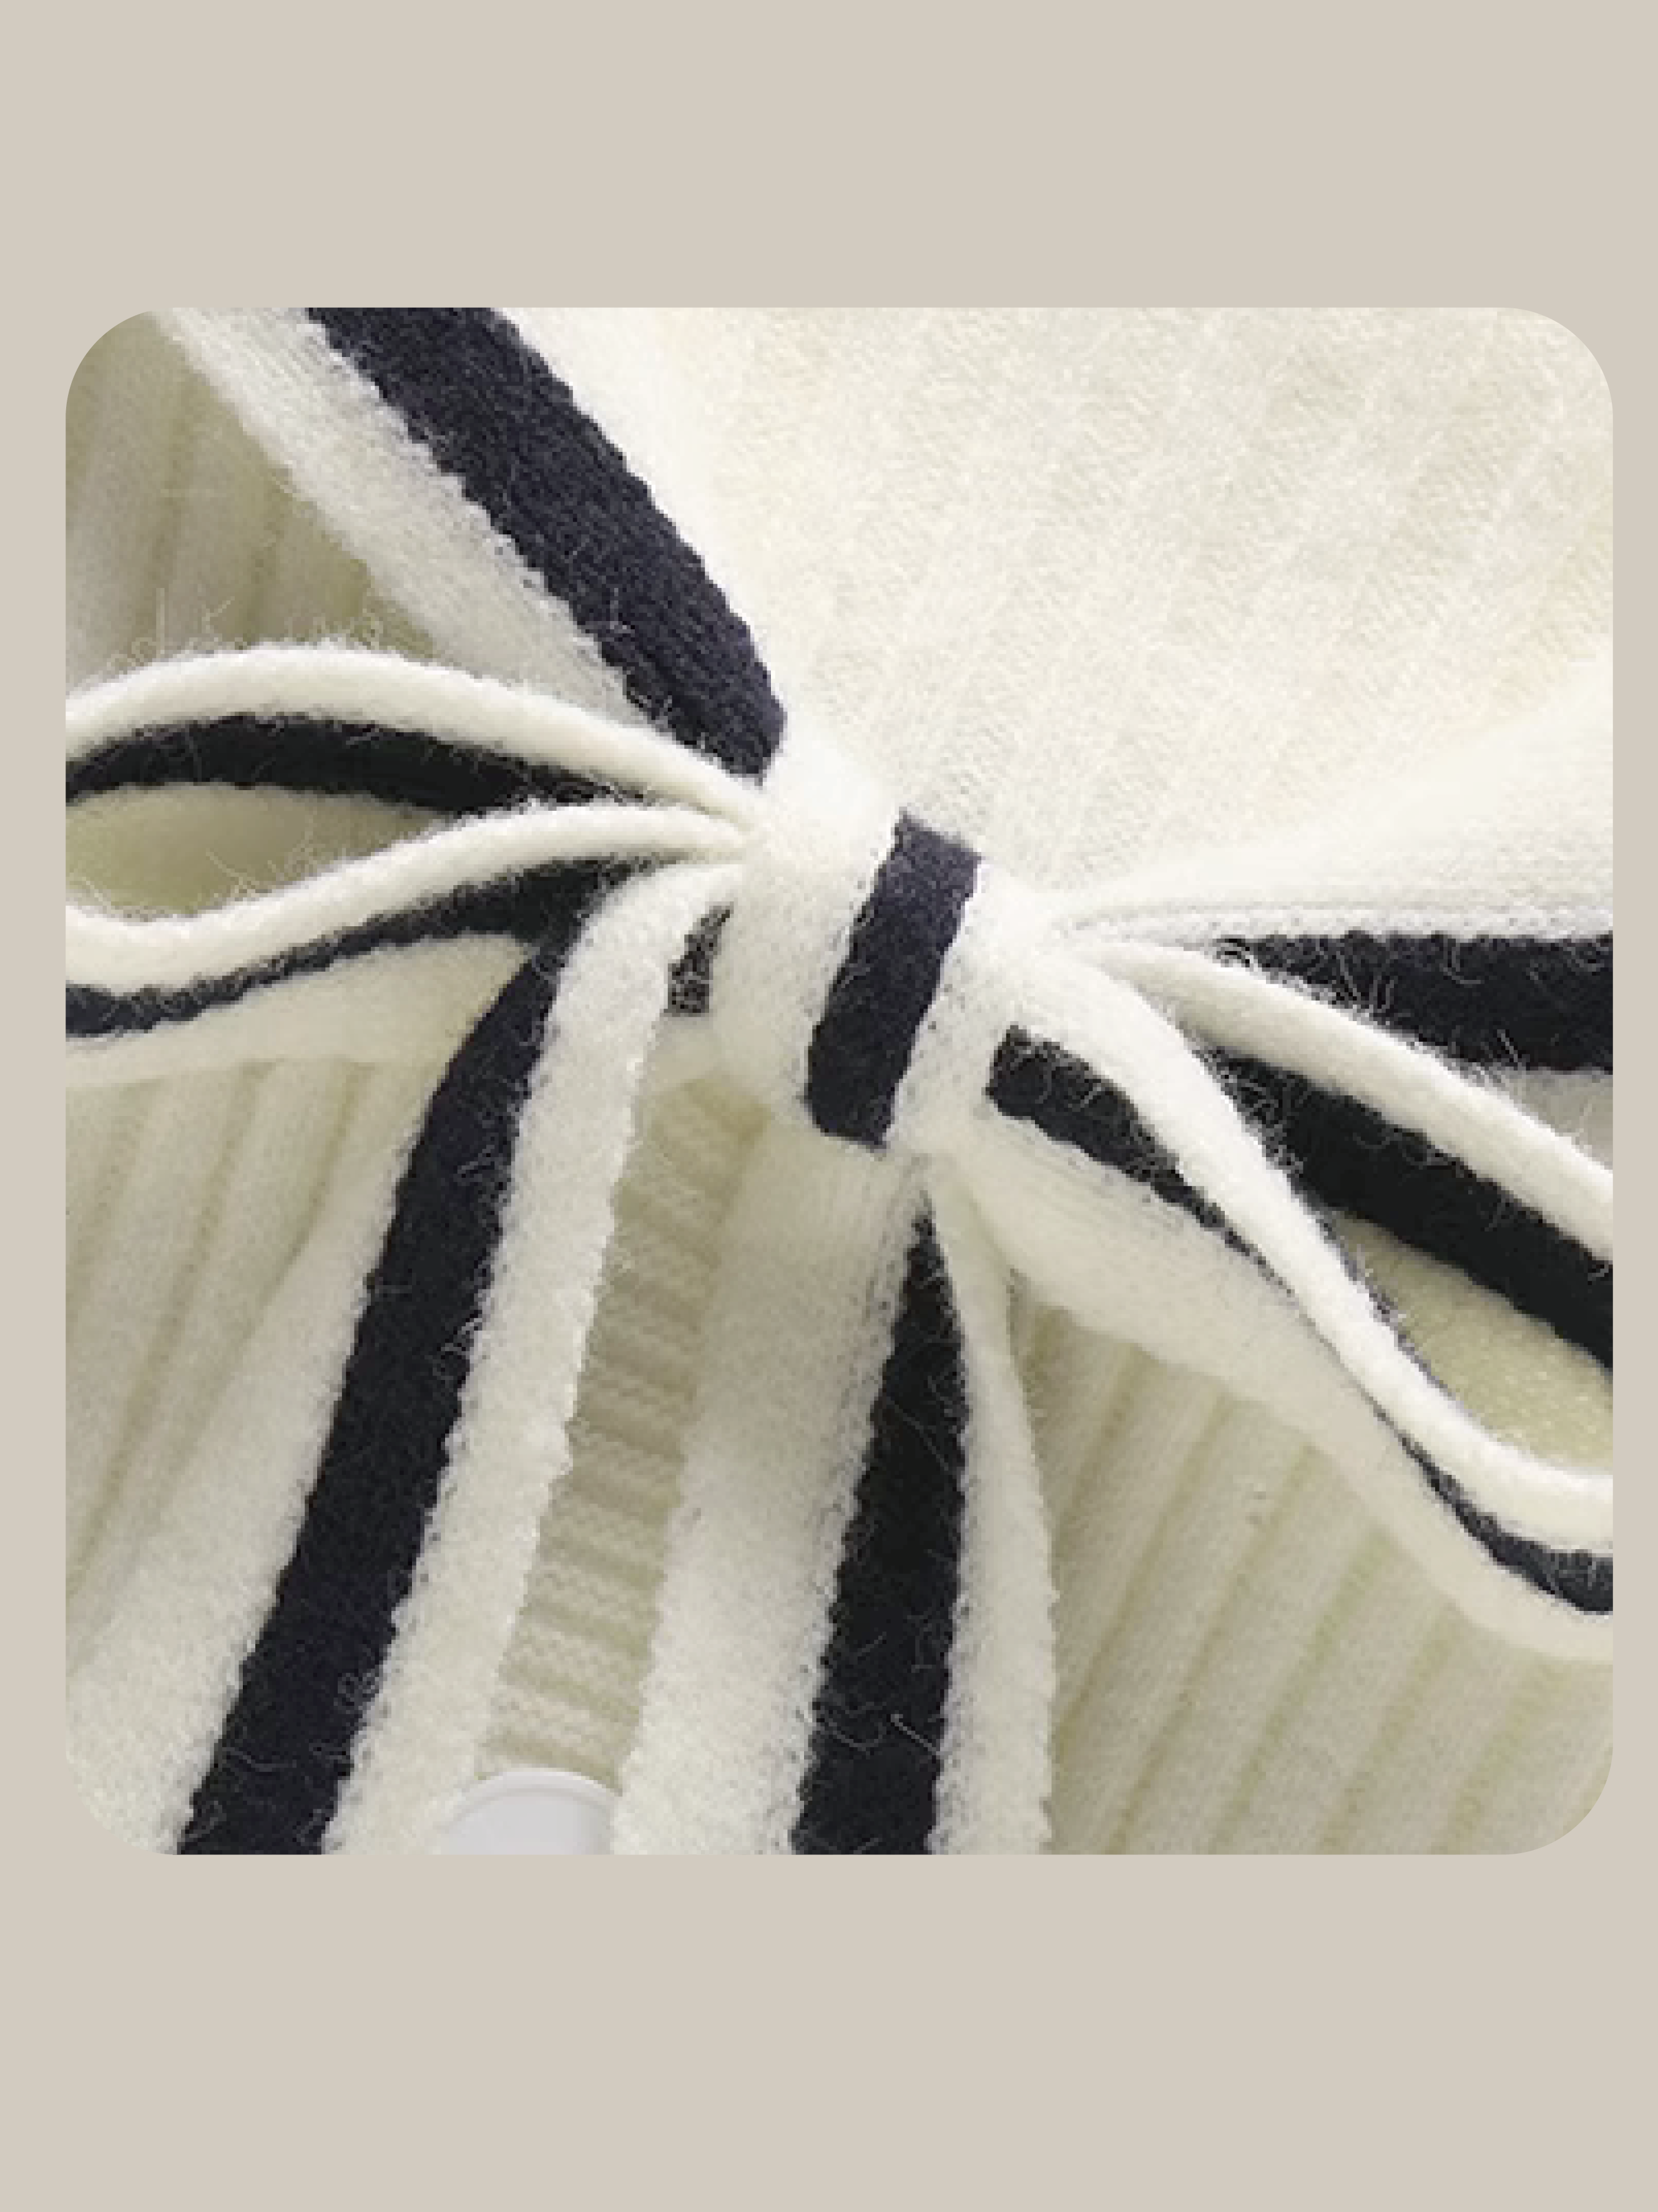 Sailor Collar Jersey Knit